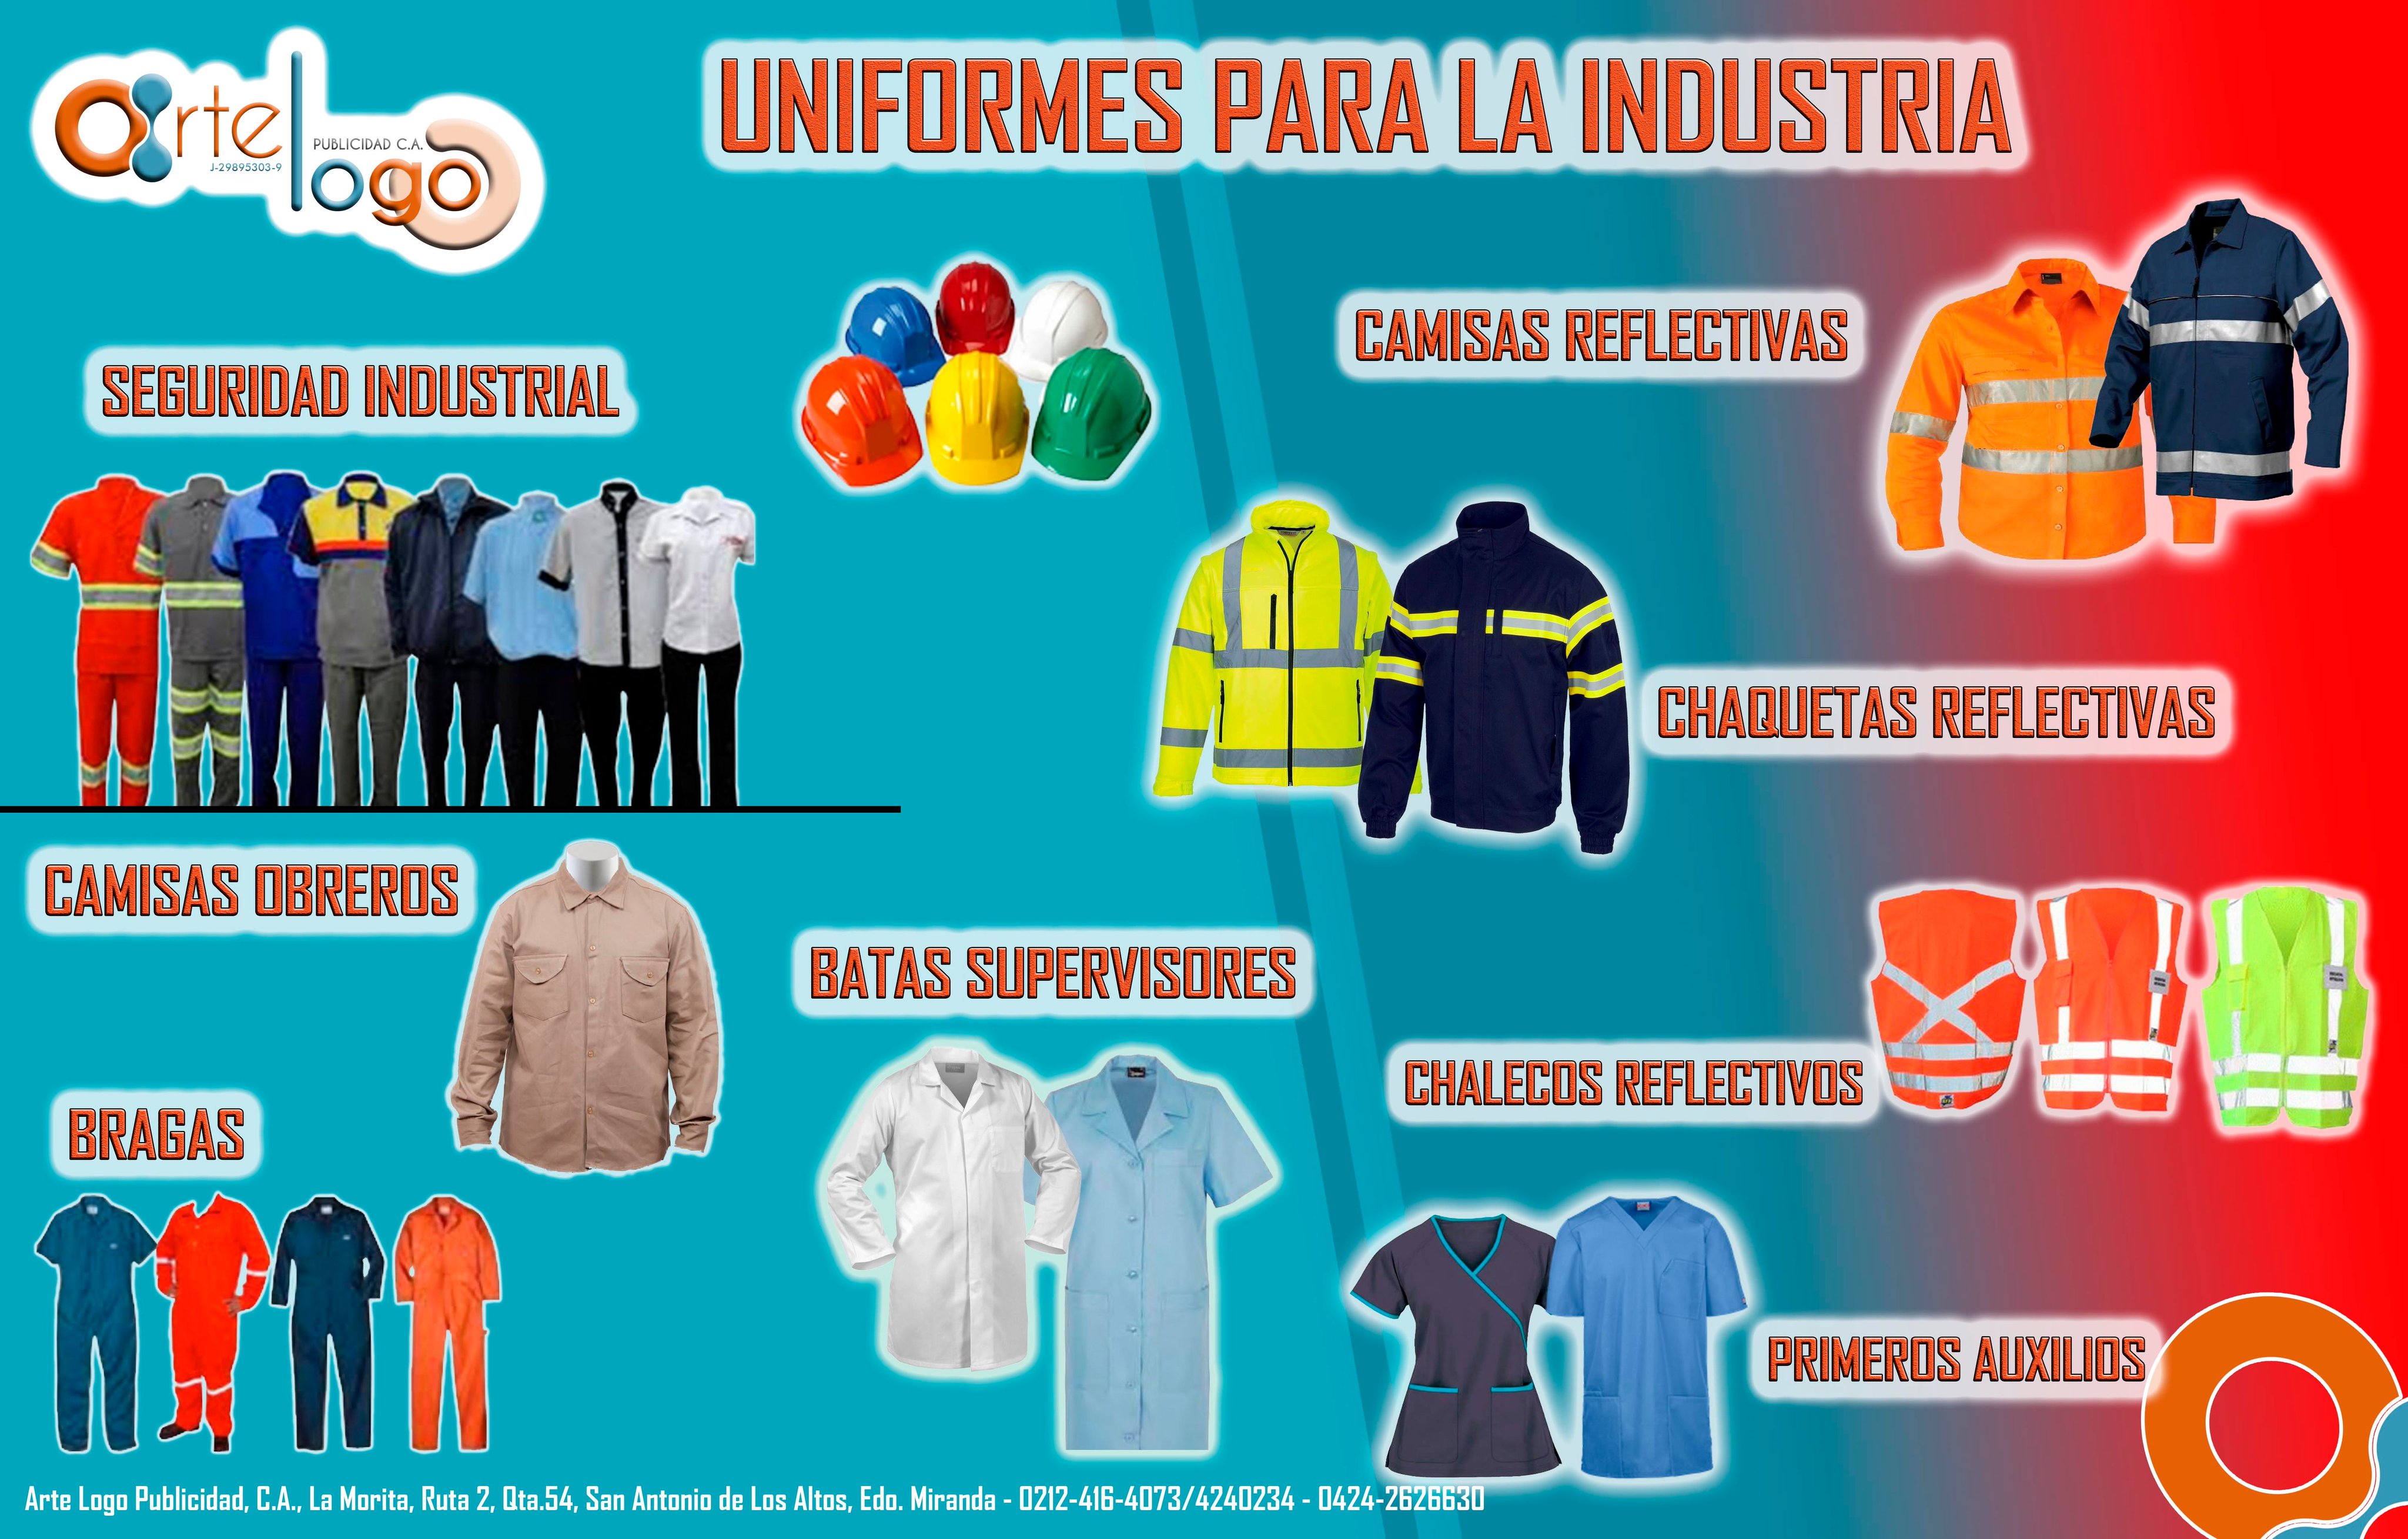 Arte Logo Publicidad on Twitter: "Fabricamos uniformes para la industria, asesoría, precios, calidad insuperable #ropa #7Abr #empresas #ccs #rt #moda #felizviernes https://t.co/HAGsYmpU8e" / Twitter